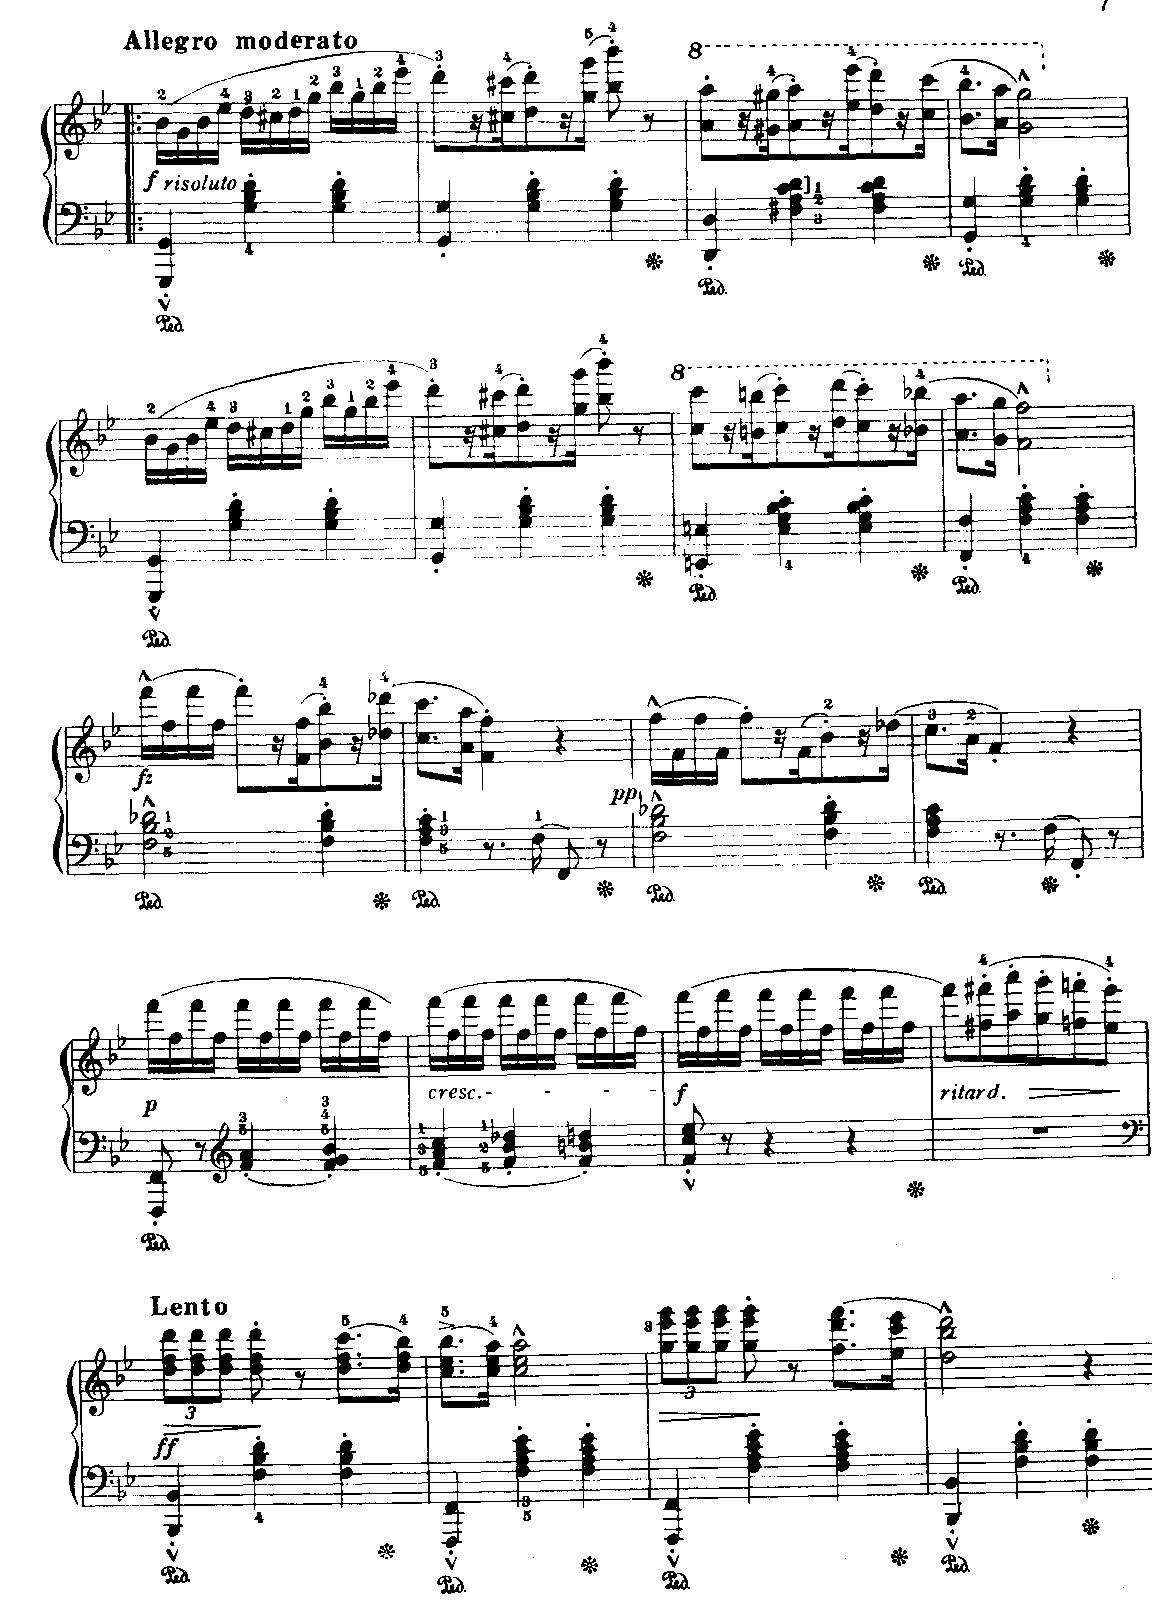 阿尔卑斯黄昏/阿尔贝斯黄昏-奥斯特(钢琴谱) 吉他谱